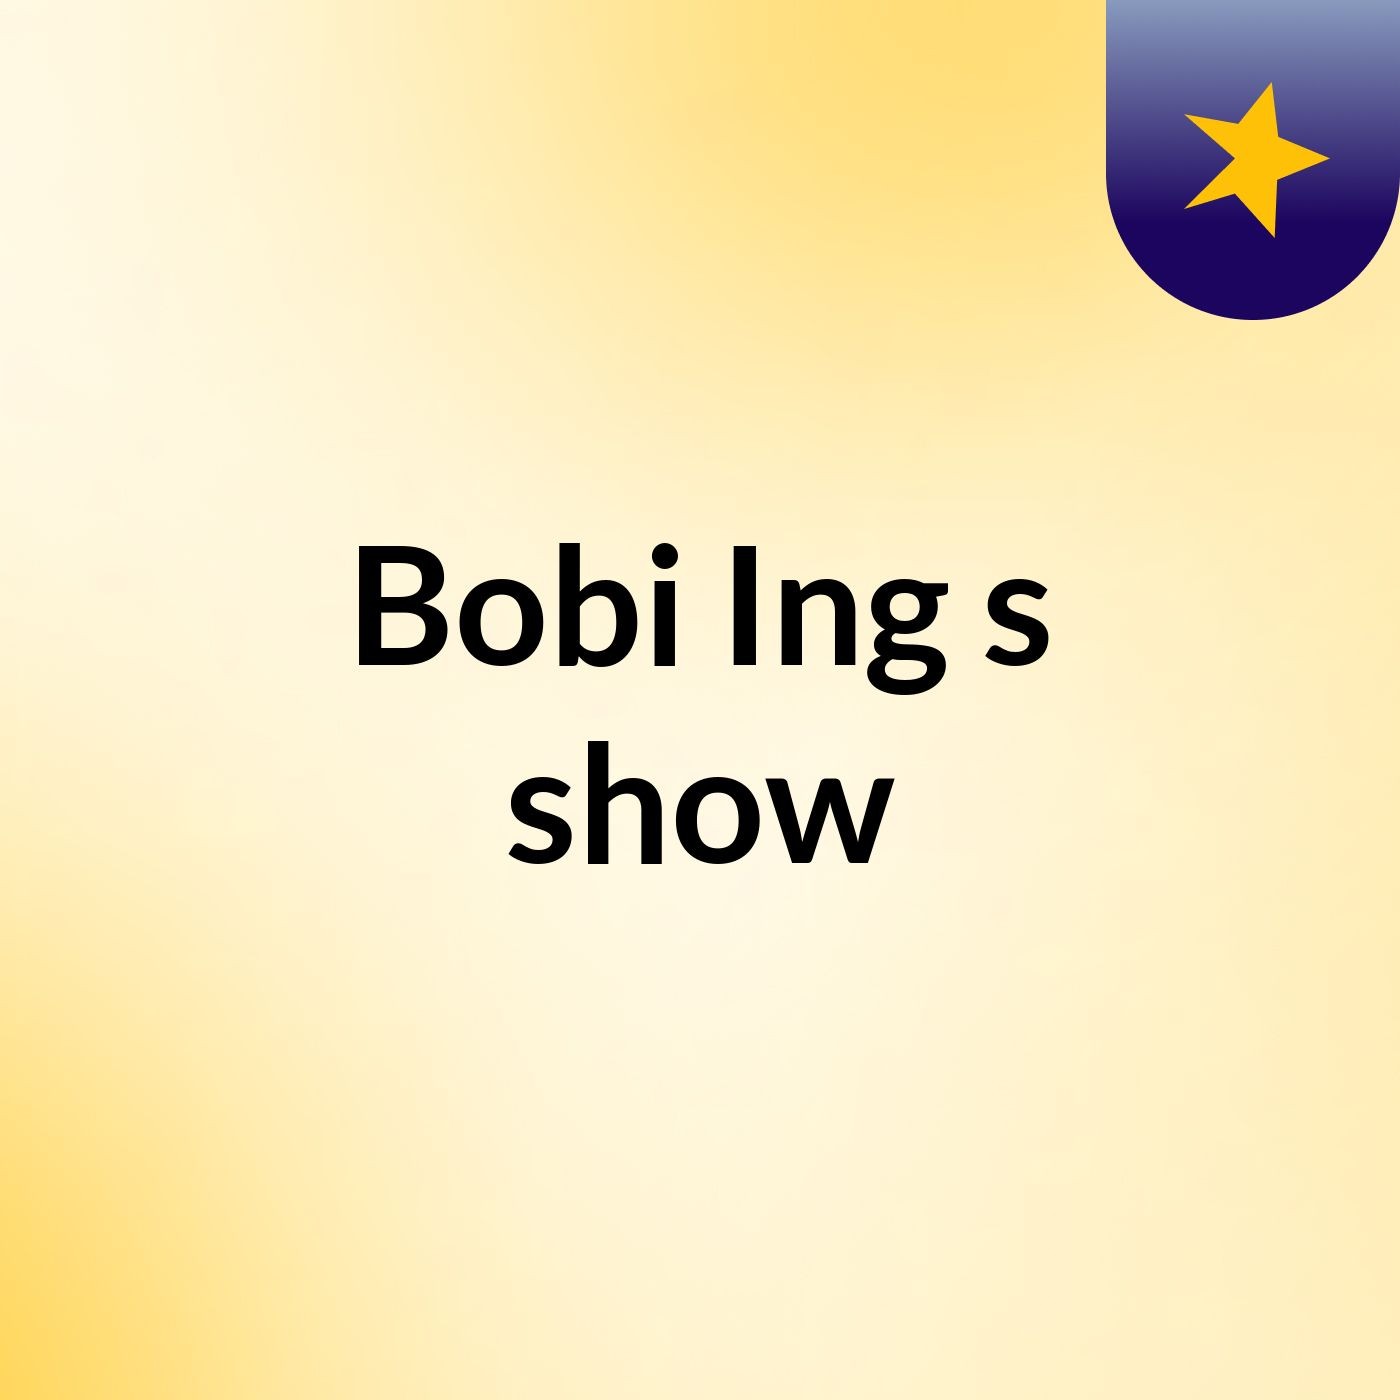 Bobi Ing's show